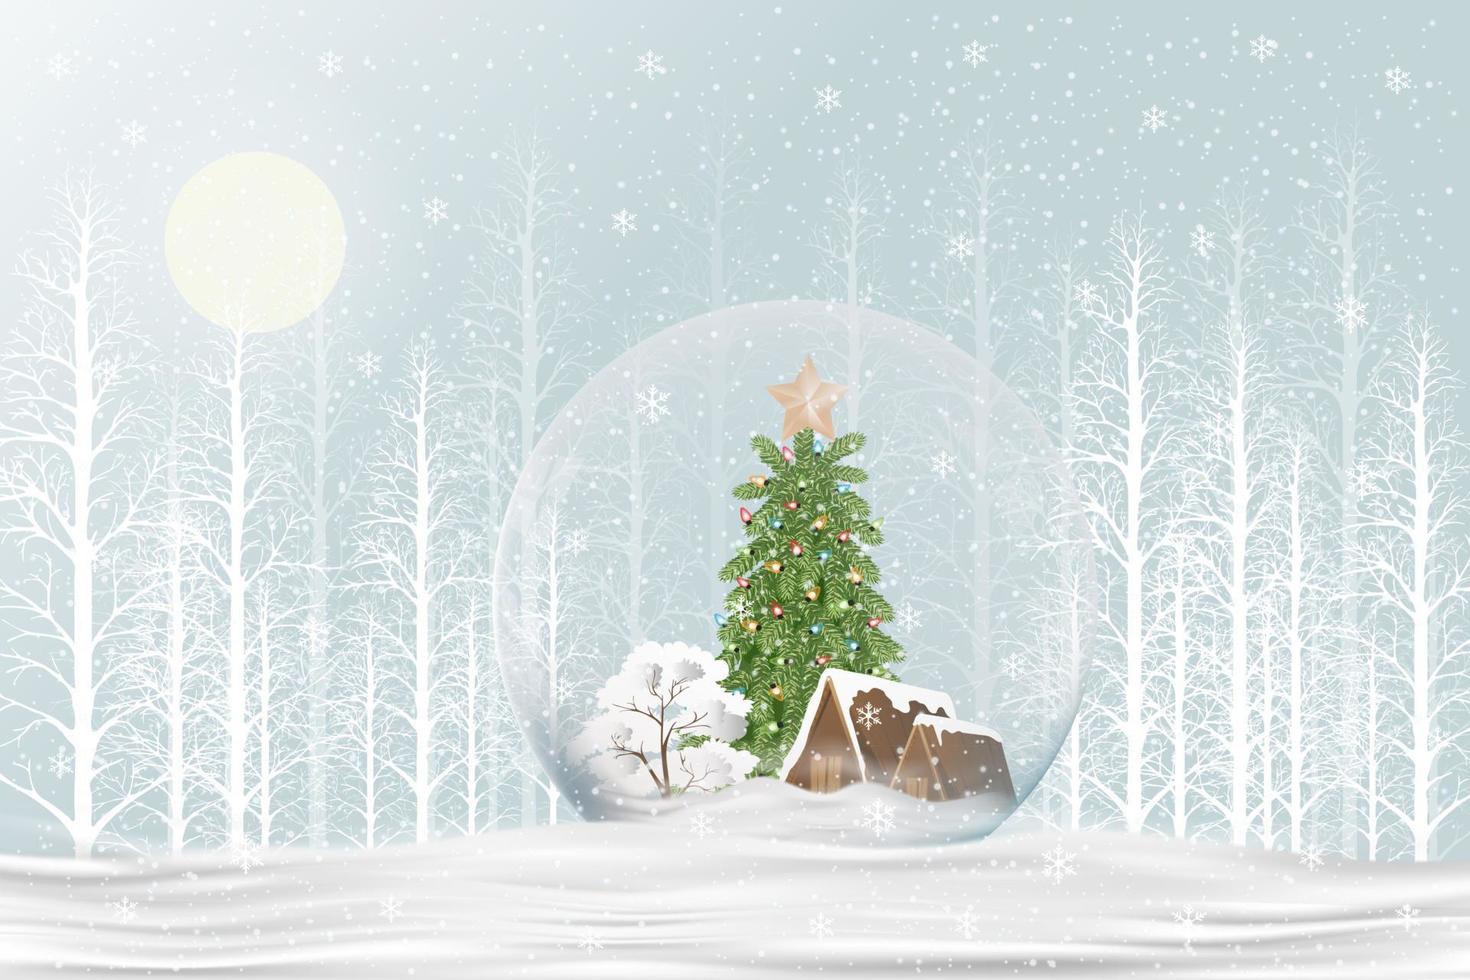 globo de neve de presente de natal feliz com árvore de natal e casa dentro no chão de neve em fundo azul, paisagem do país das maravilhas do inverno com design 3d de bola de neve de vidro em pinheiro de floresta branca para o ano novo vetor